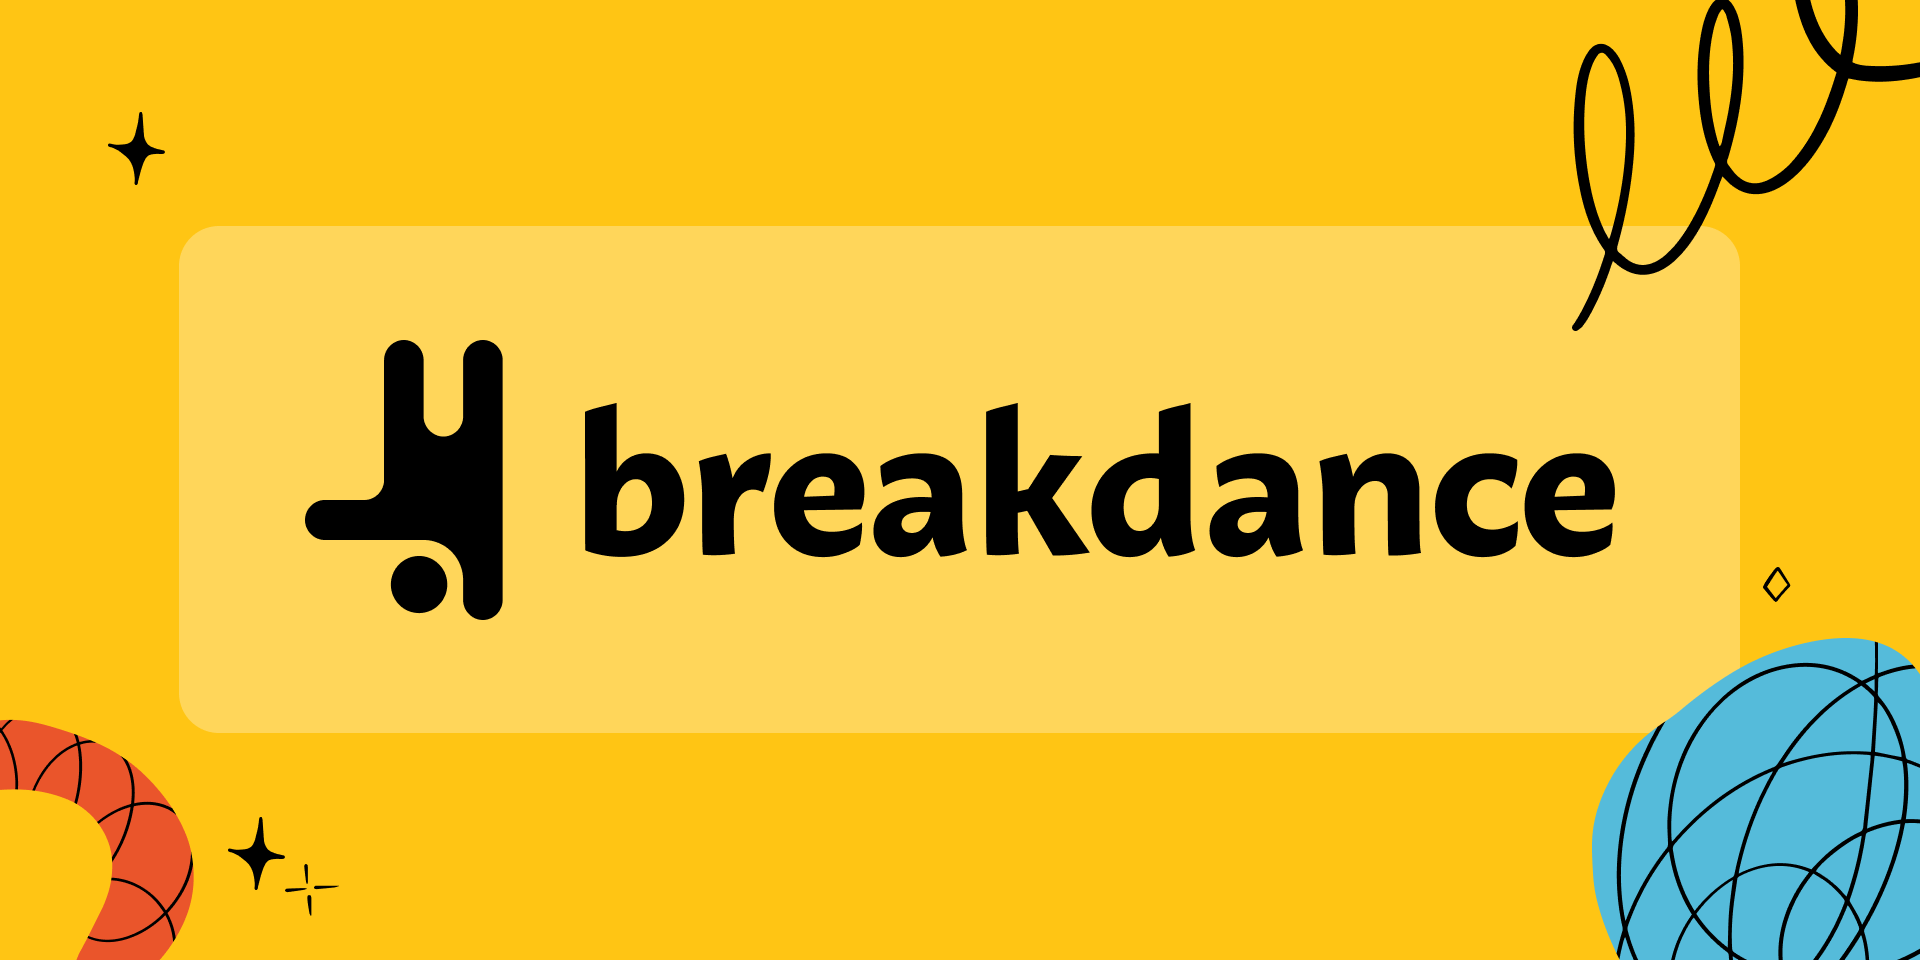 Breakdance voor WordPress: een goed alternatief voor Elementor?